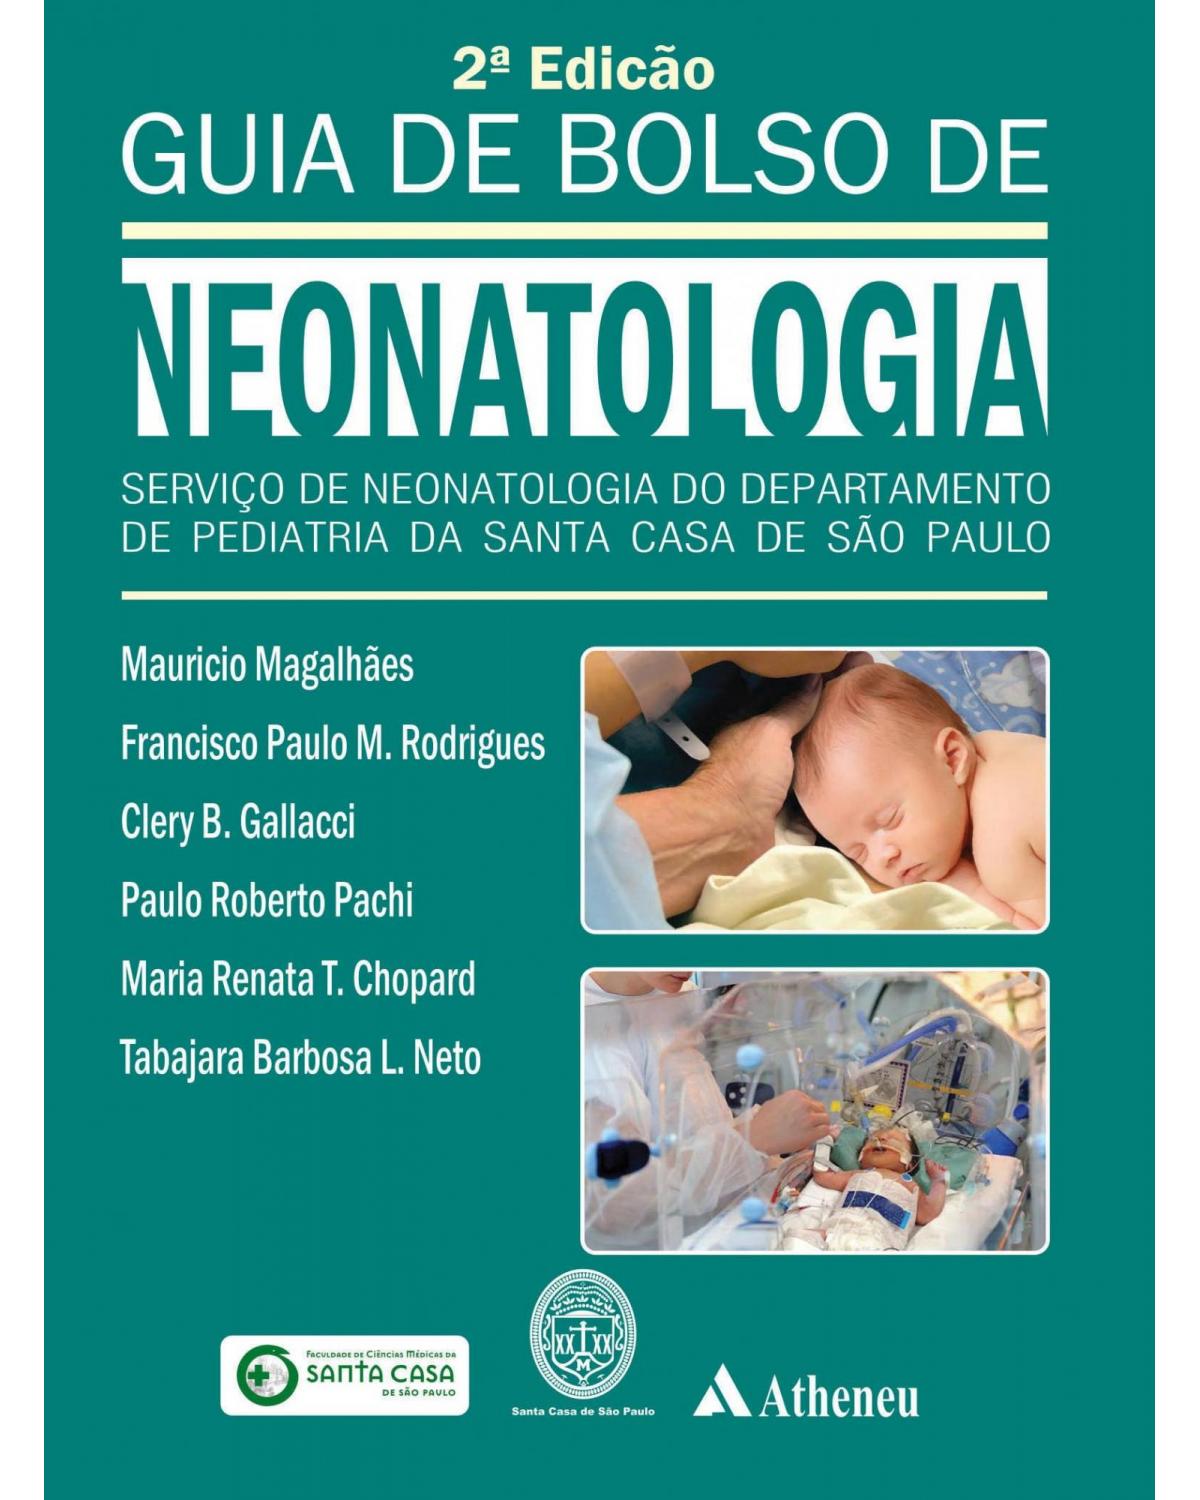 Guia de bolso de neonatologia - serviço de neotalogia do departamento de pediatria da Santa Casa de São Paulo - 2ª Edição | 2016